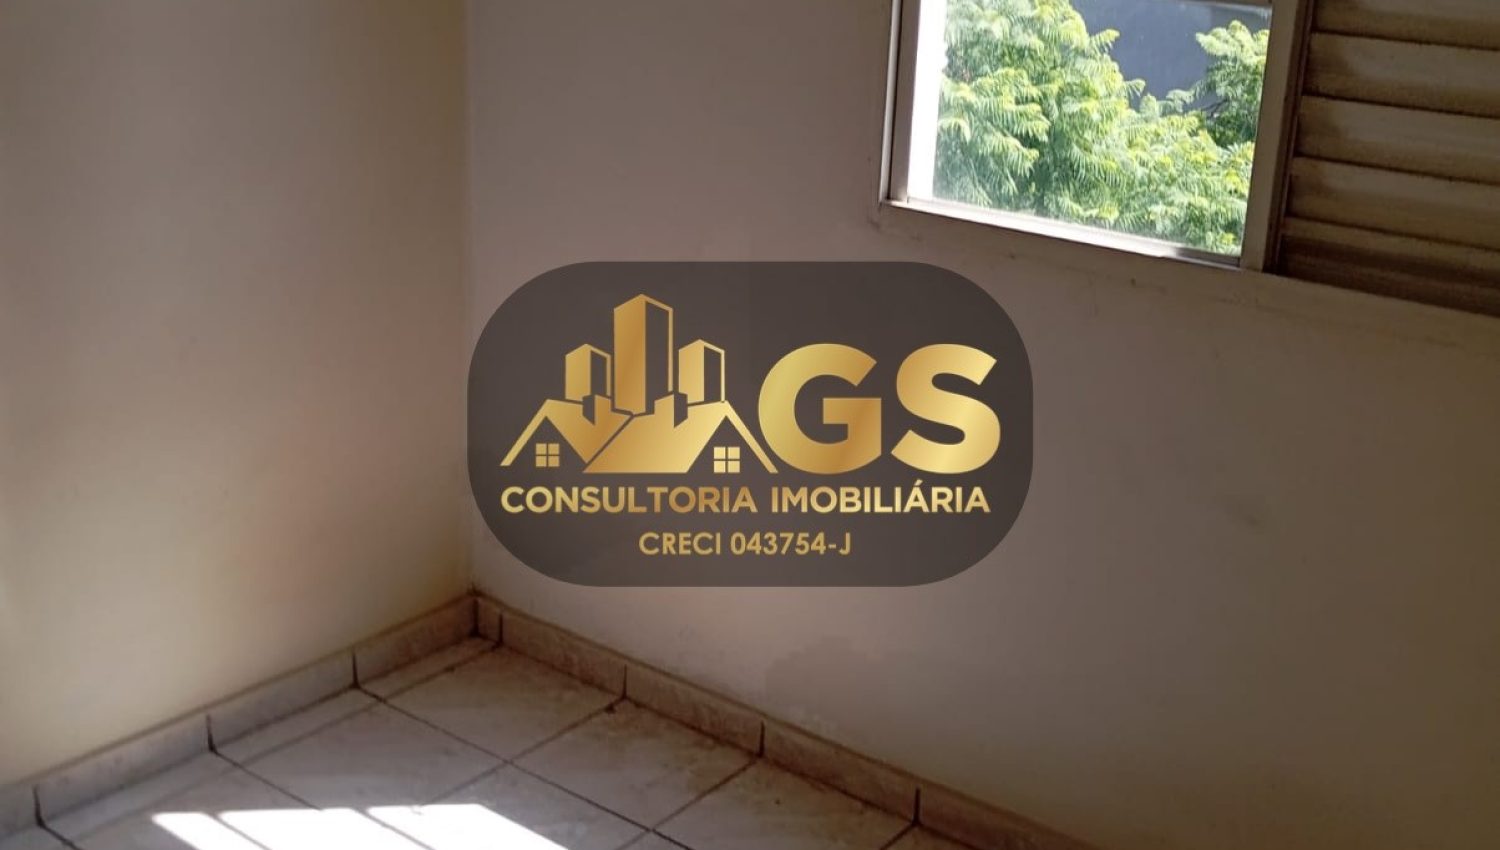 Apto Condomínio Petrópolis - Cód. 0132 (3)